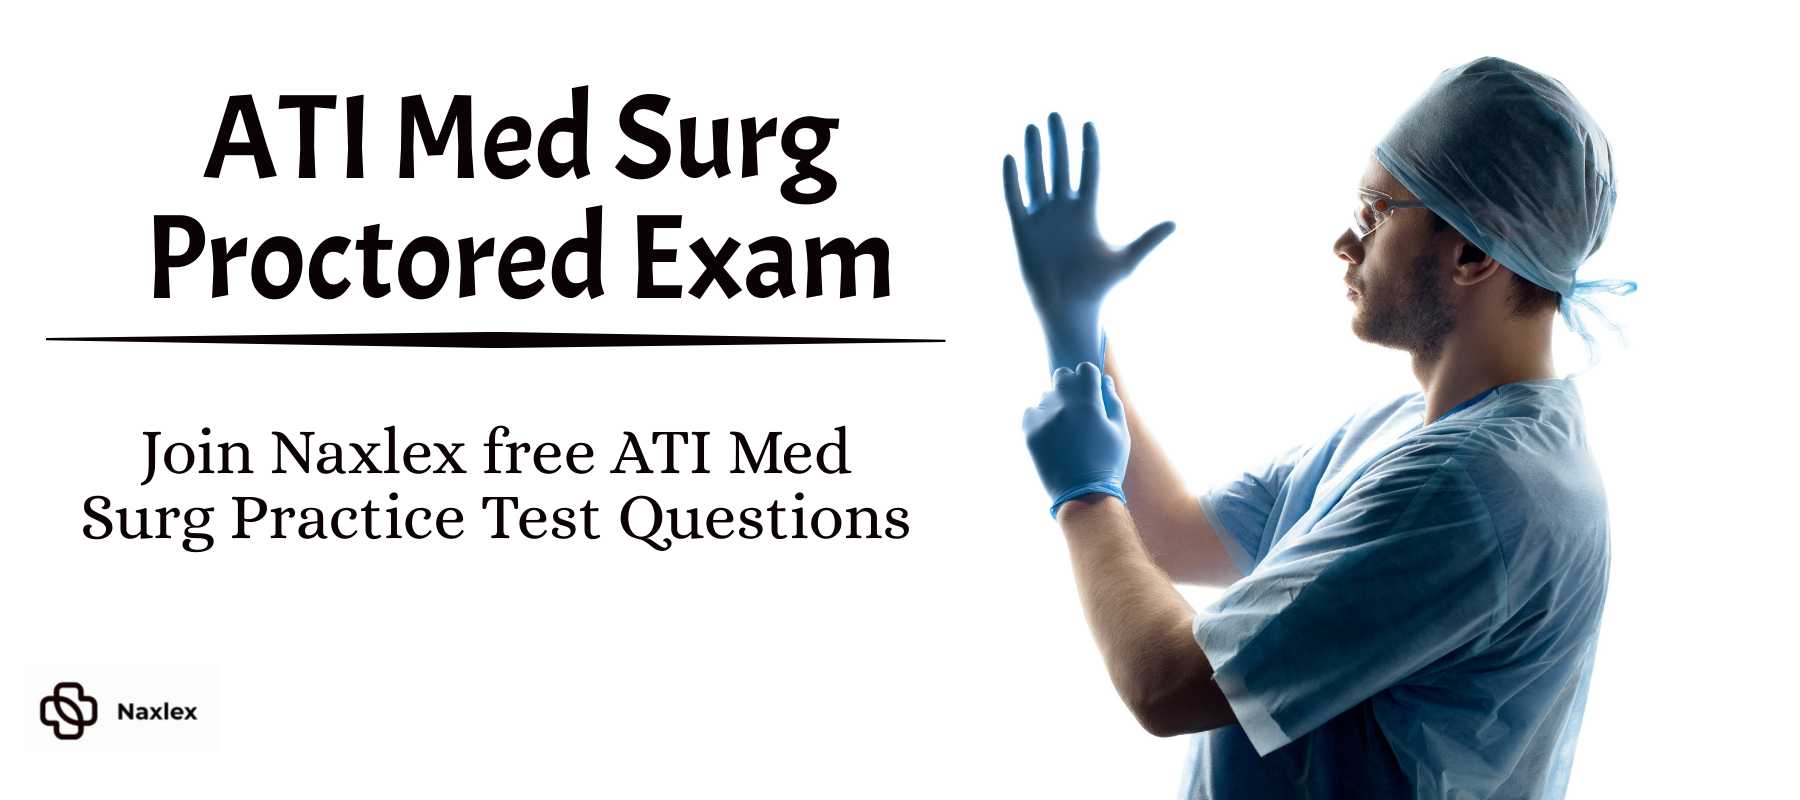 ATI Med Surg Proctored Exam